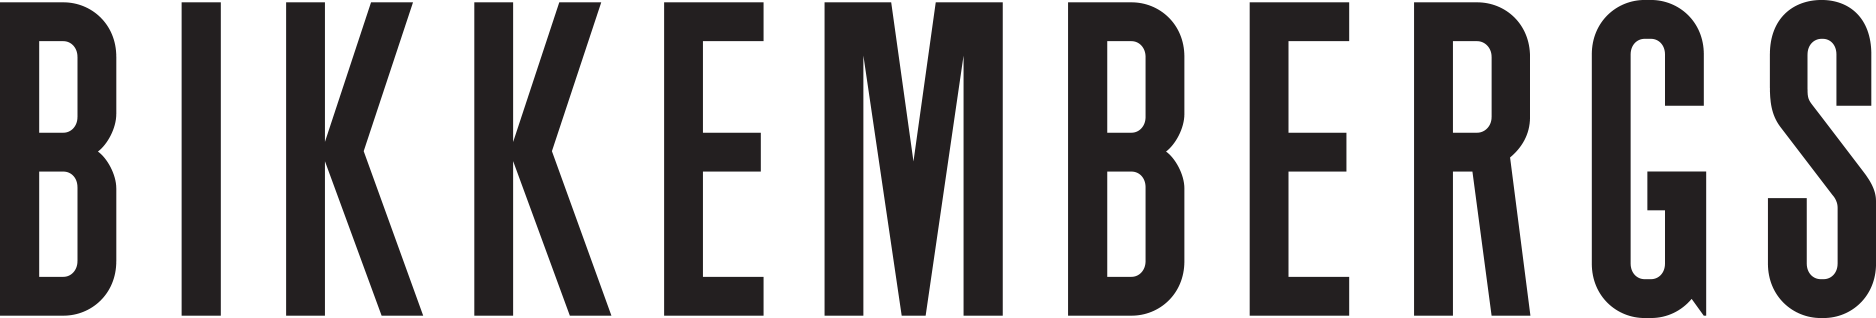 Bikkemberg logo